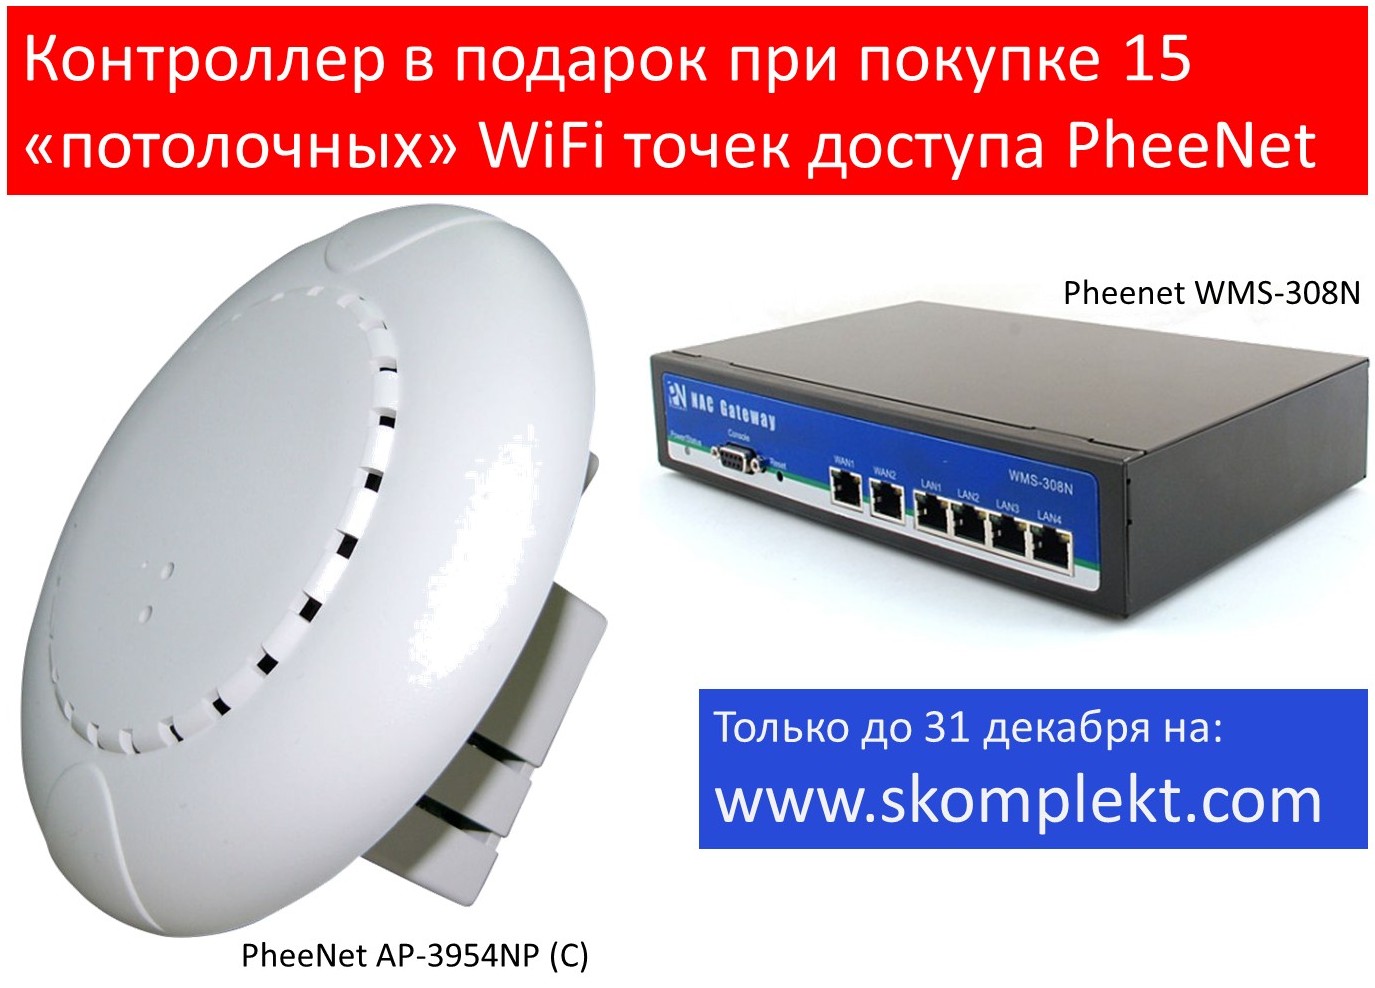 Контроллер в подарок при покупке «потолочных» WiFi точек доступа PheeNet